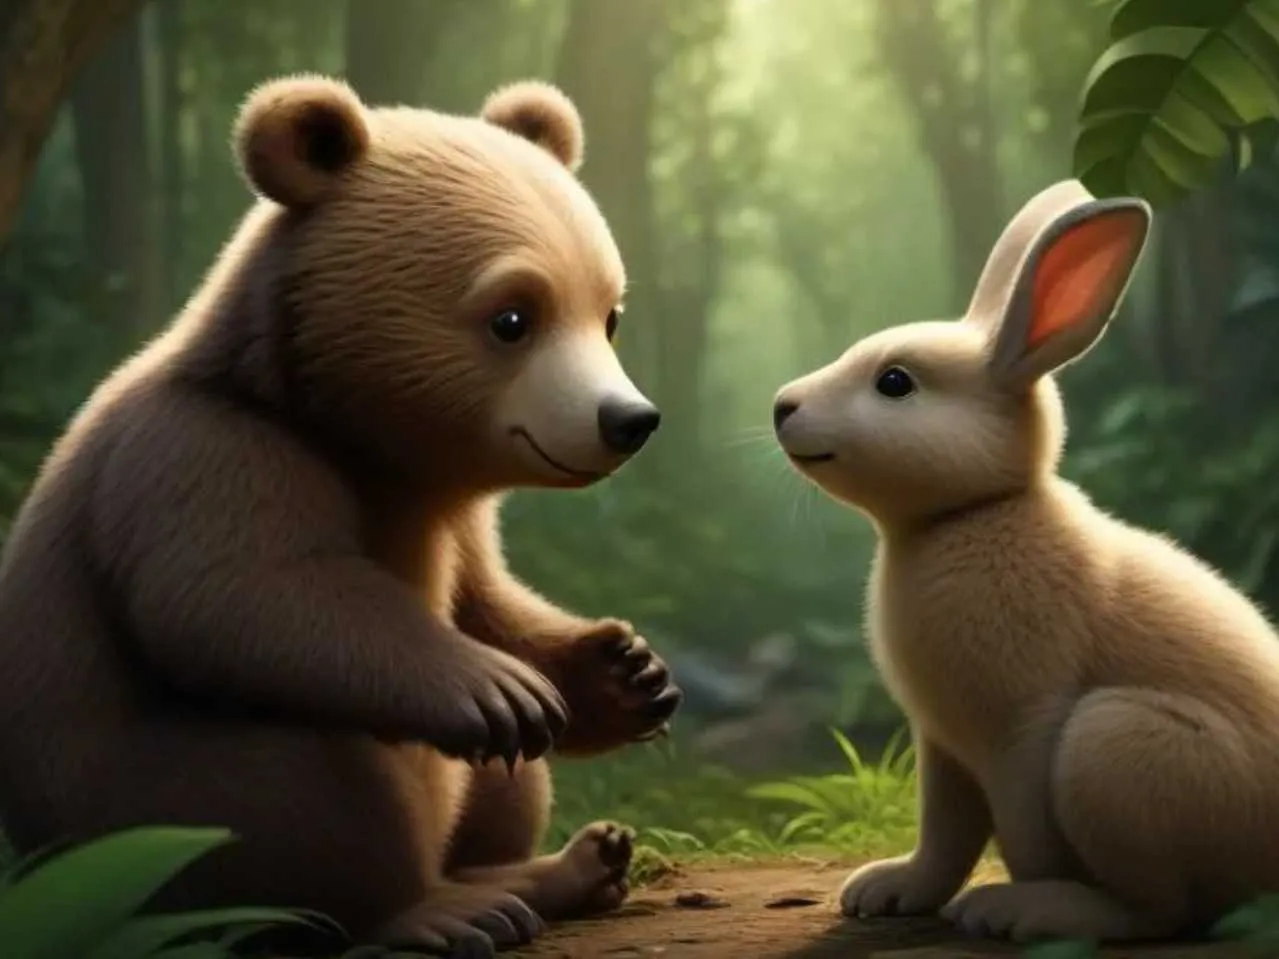 bear cub talking to rabbit